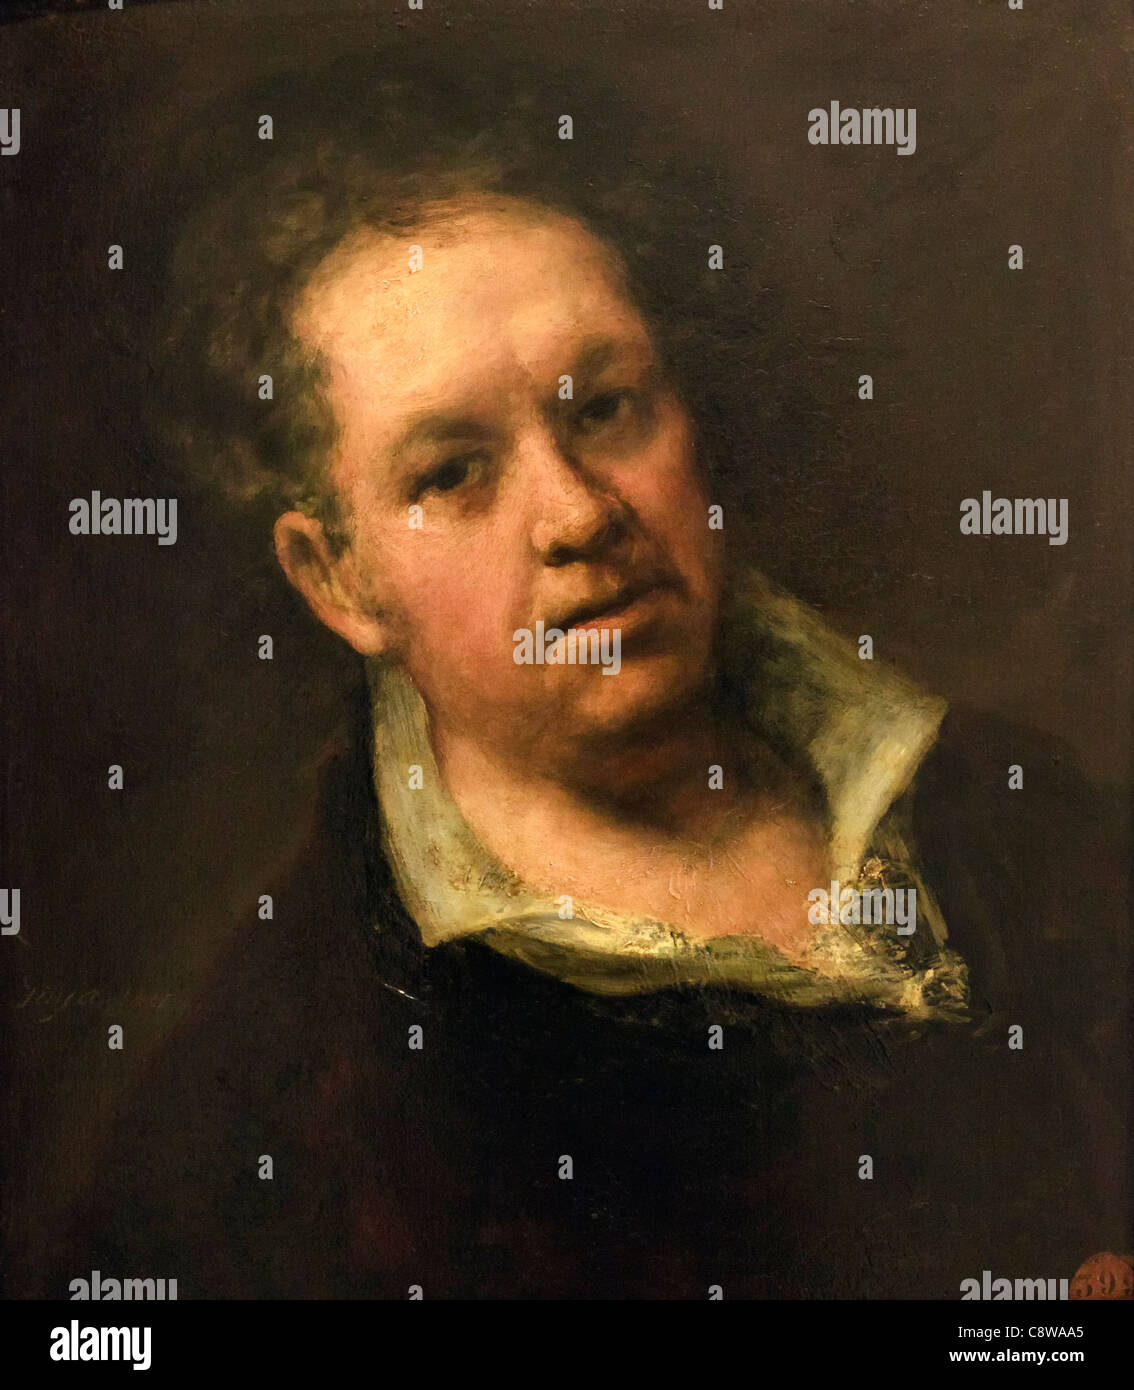 L'auto-portrait. Francisco Goya à l'âge de 69 ans. Francisco José de Goya y Lucientes, 1746 - 1828. Peintre et graveur romantique espagnol. Banque D'Images